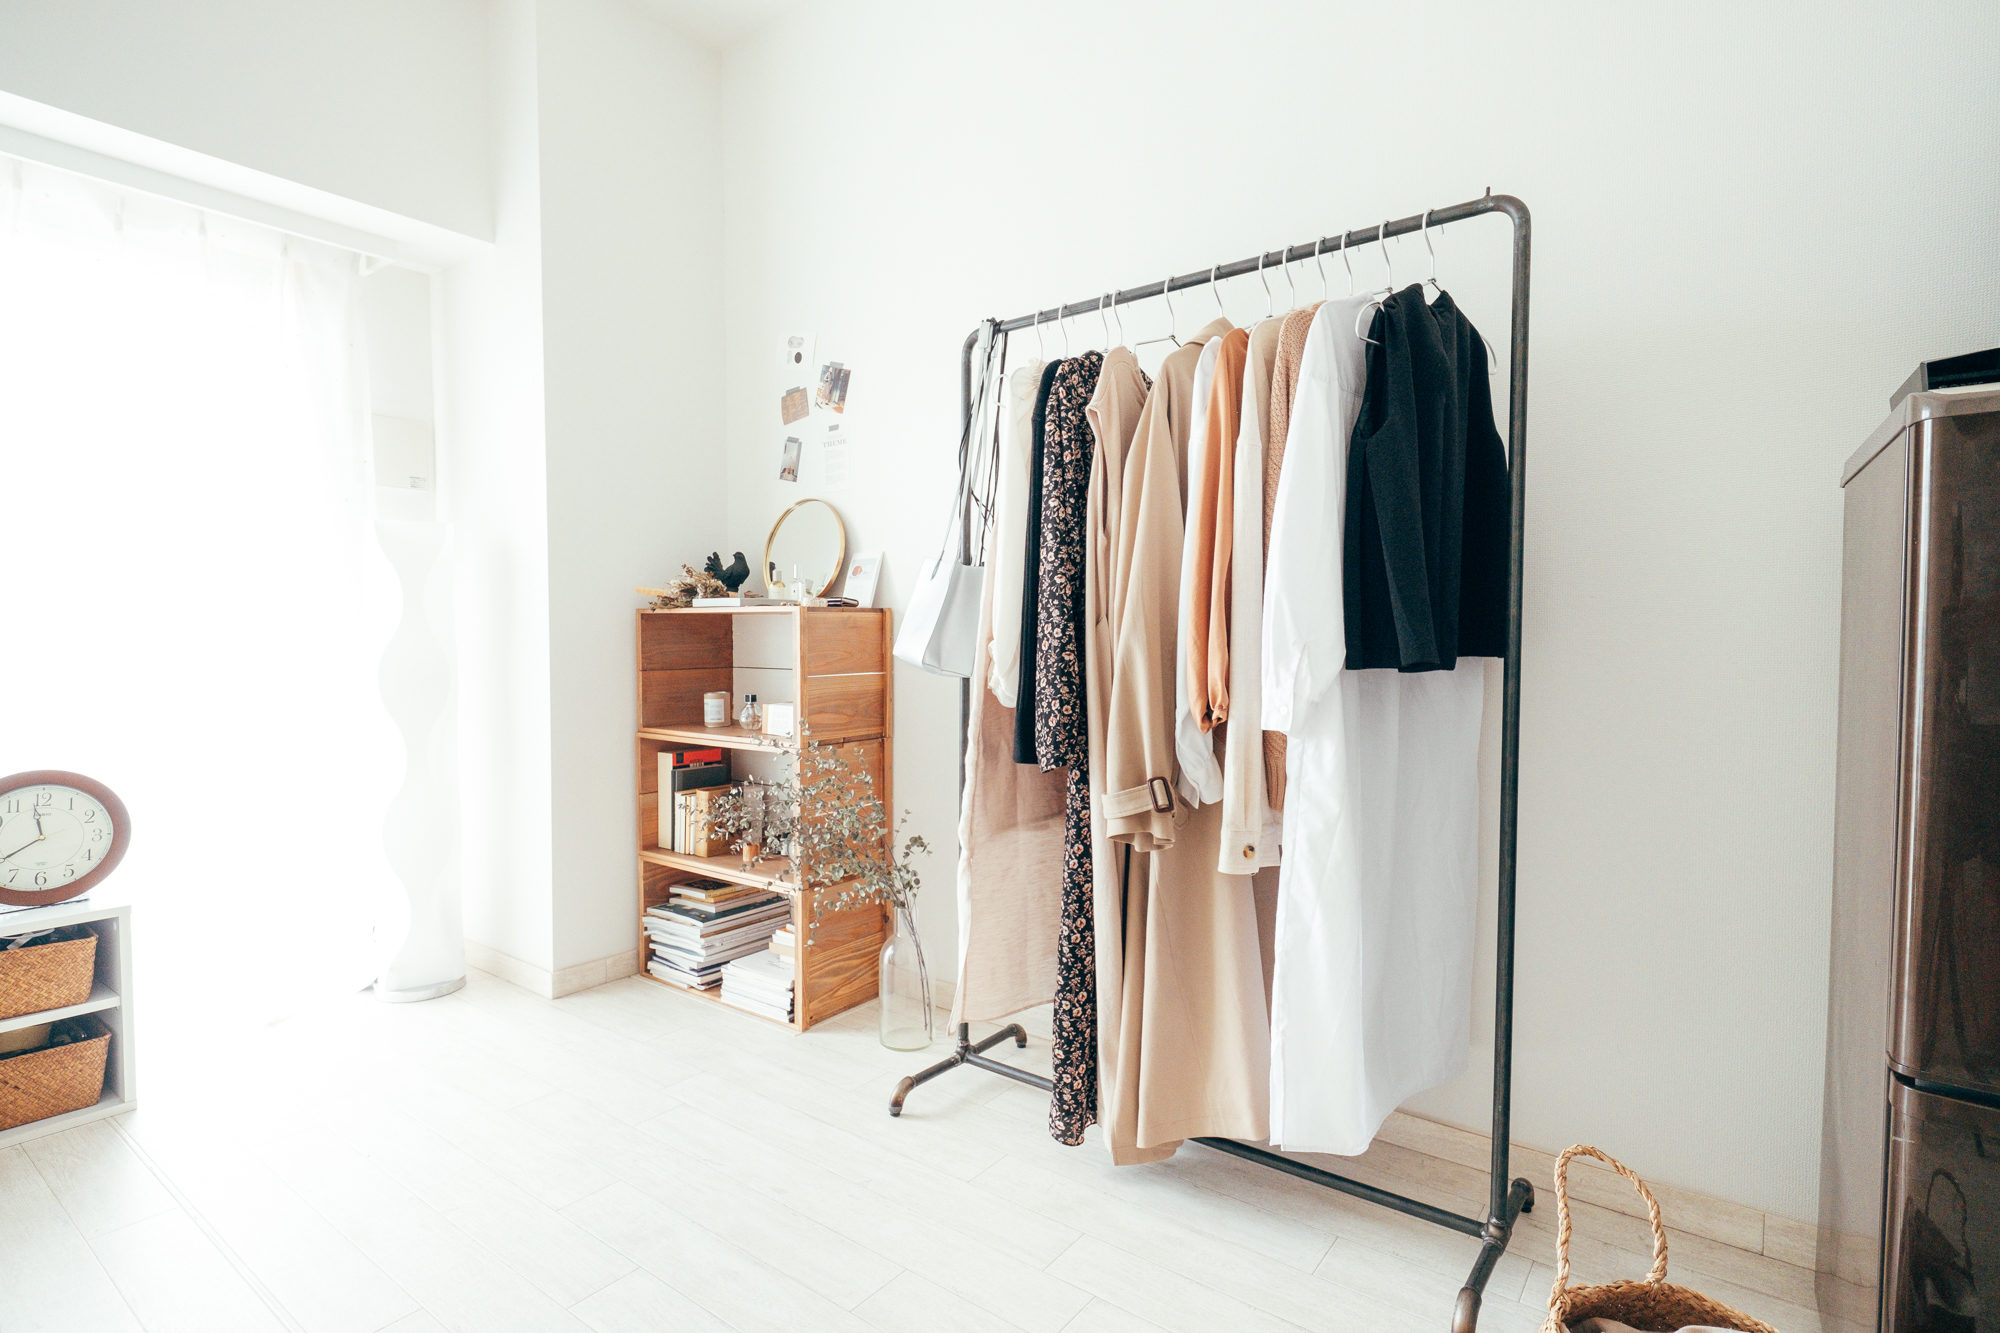 お洋服をたっぷり収納できるハンガーラック。細身のタイプのものを選べば、ベッドと壁の間など、隙間にはめて収納できそう！